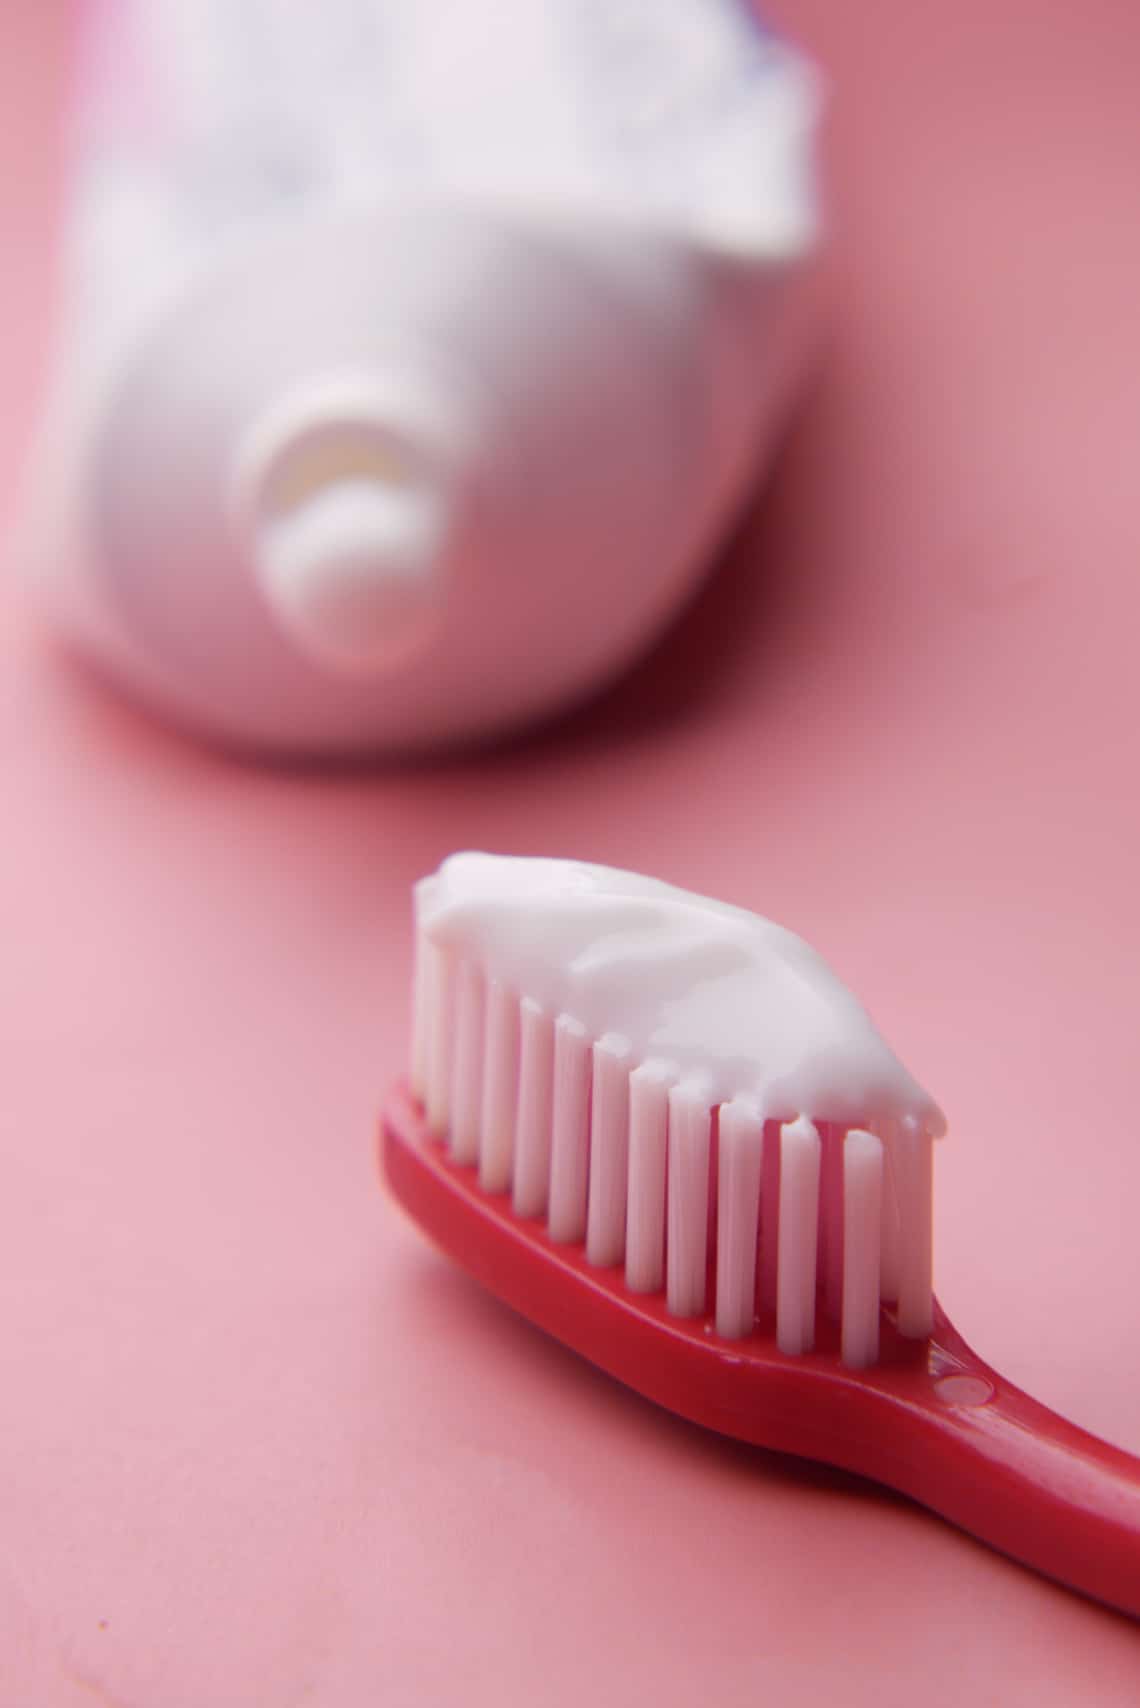 Milyen fogkrémet használj?